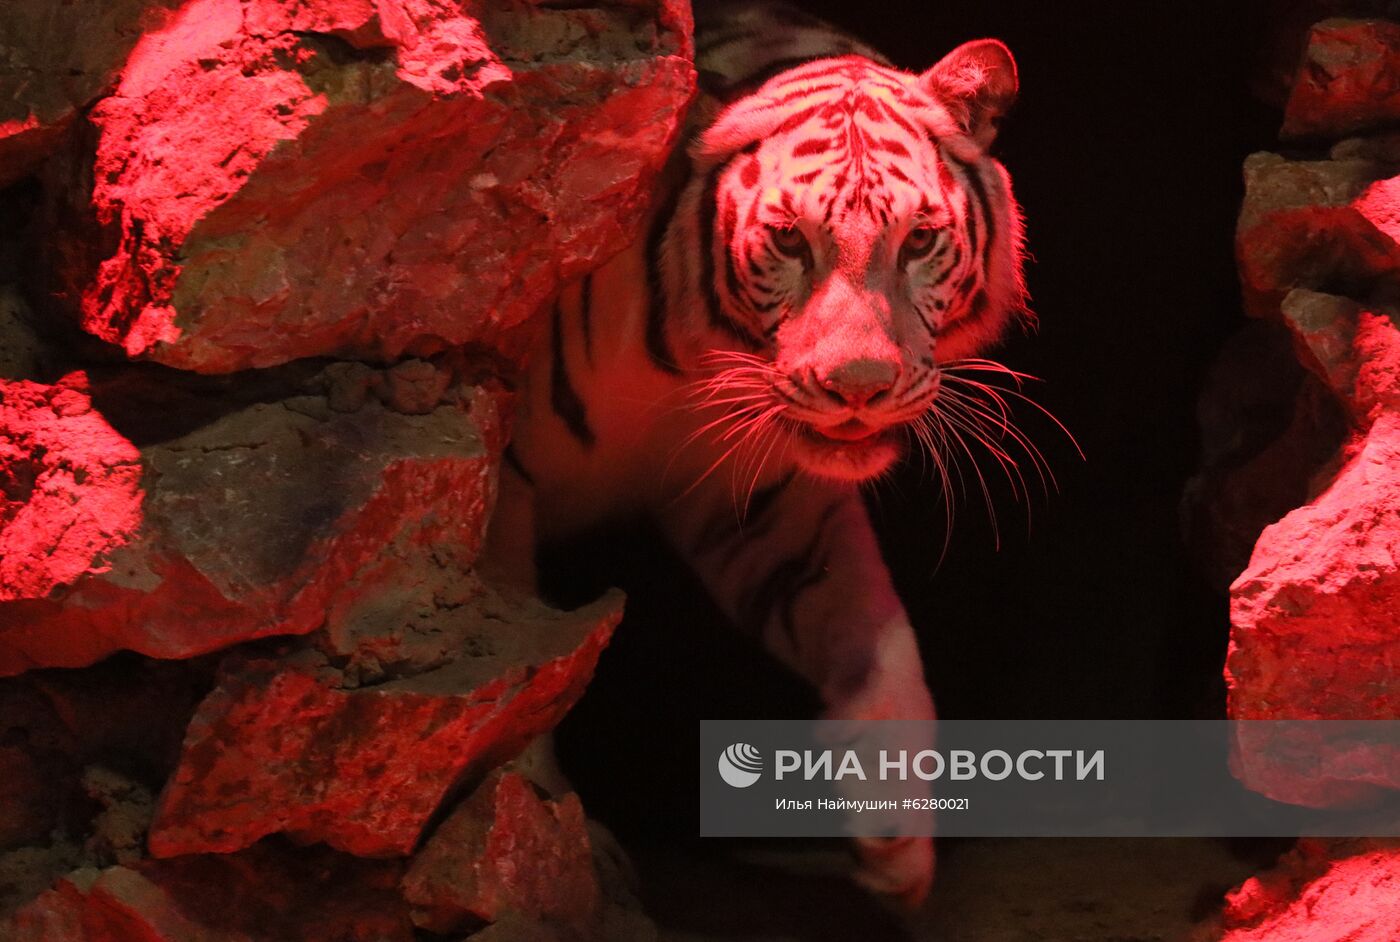 Красноярский парк флоры и фауны "Роев ручей" открылся для посетителей 